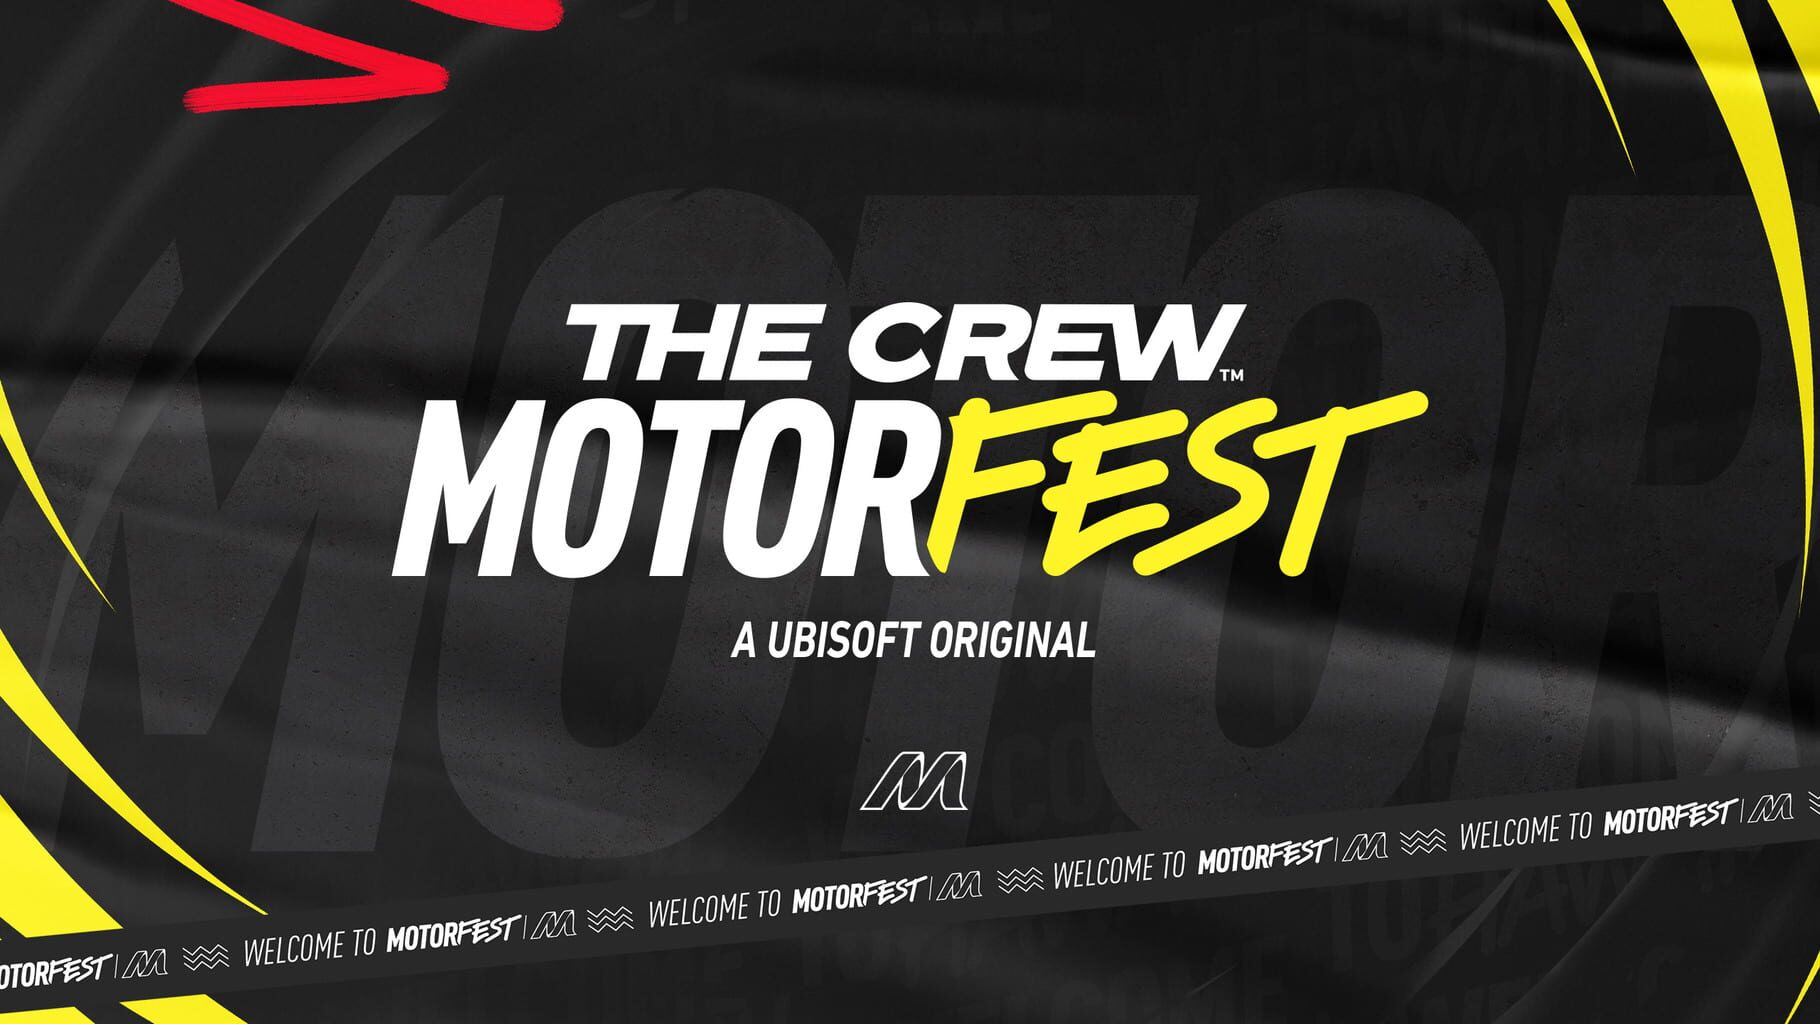 Artwork for The Crew: Motorfest